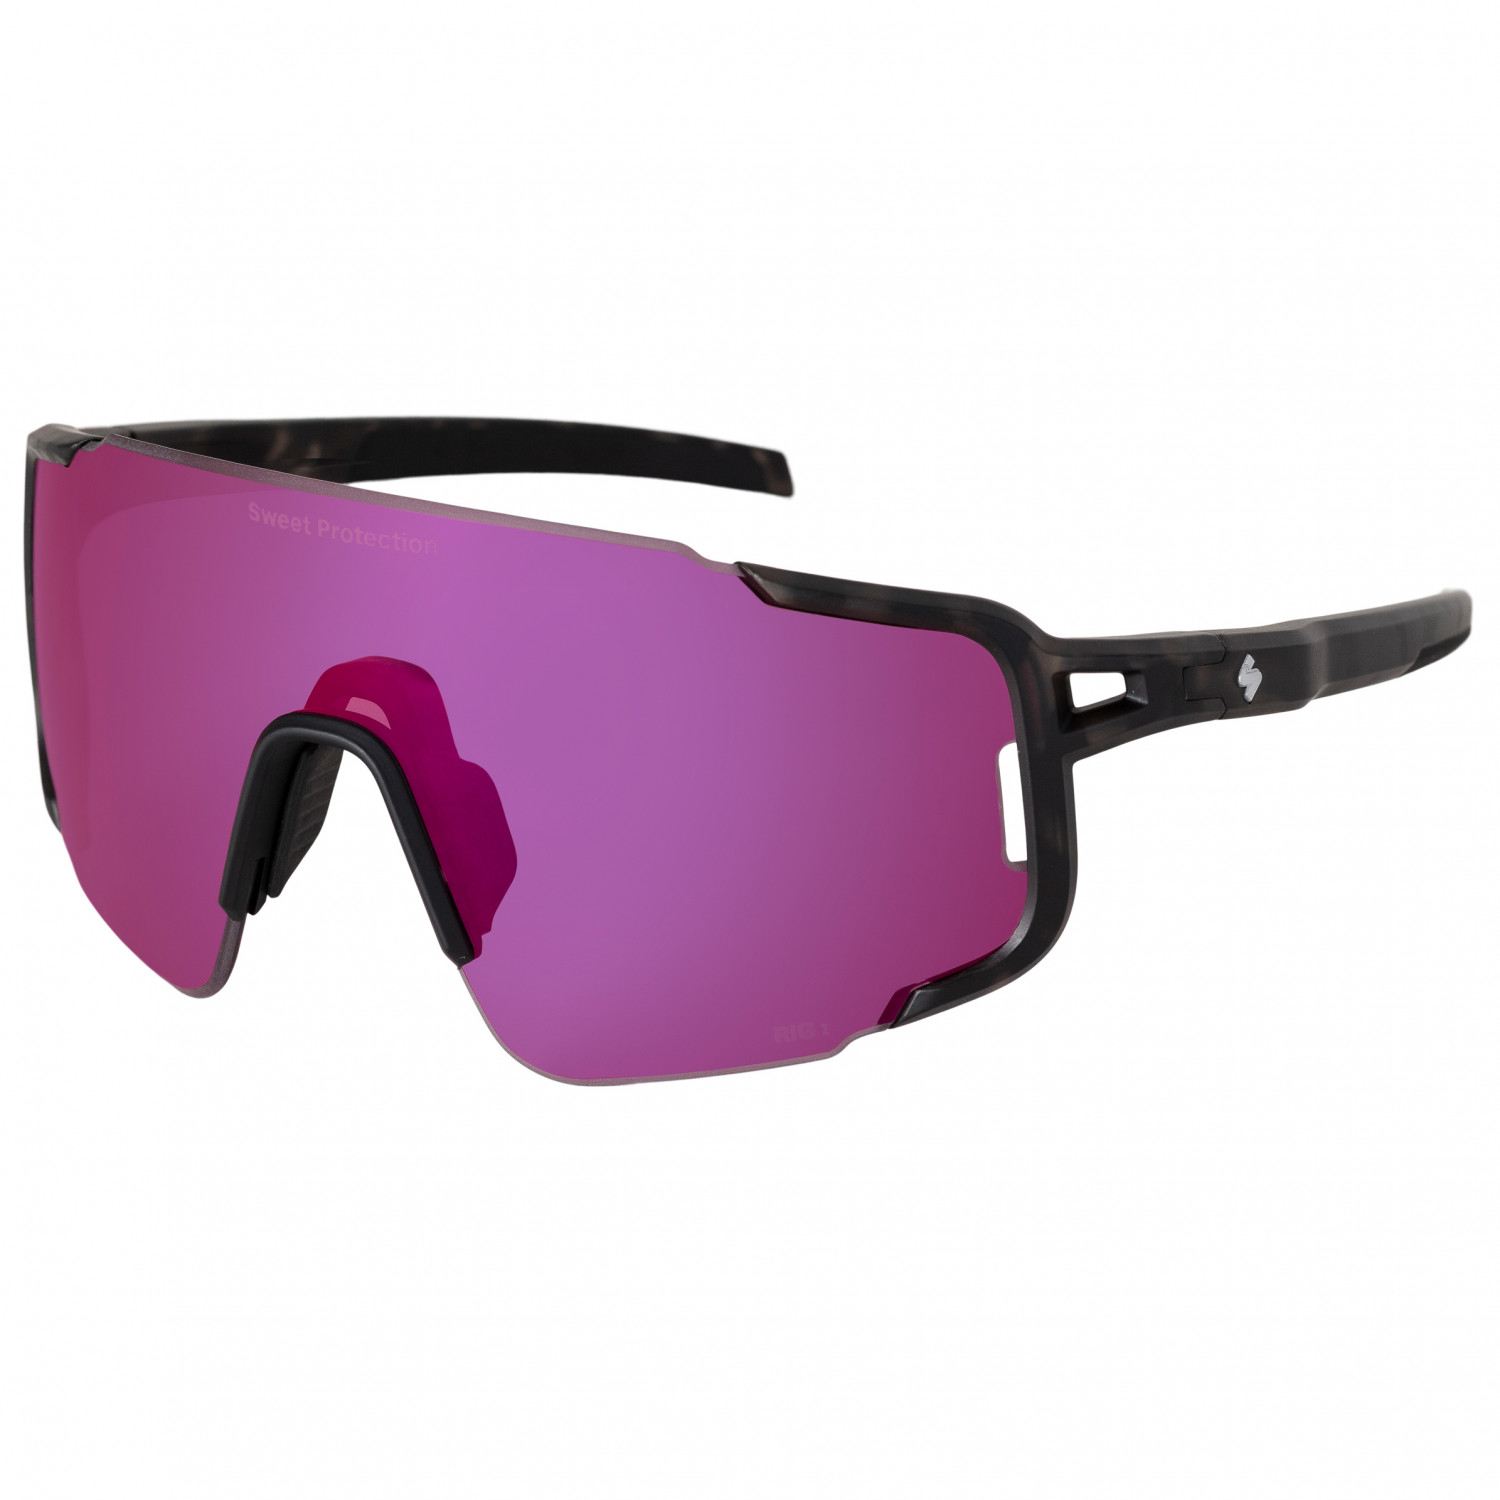 цена Велосипедные очки Sweet Protection Ronin Max RIG Reflect S2 (VLT 25%), матовый кристально черный камуфляж